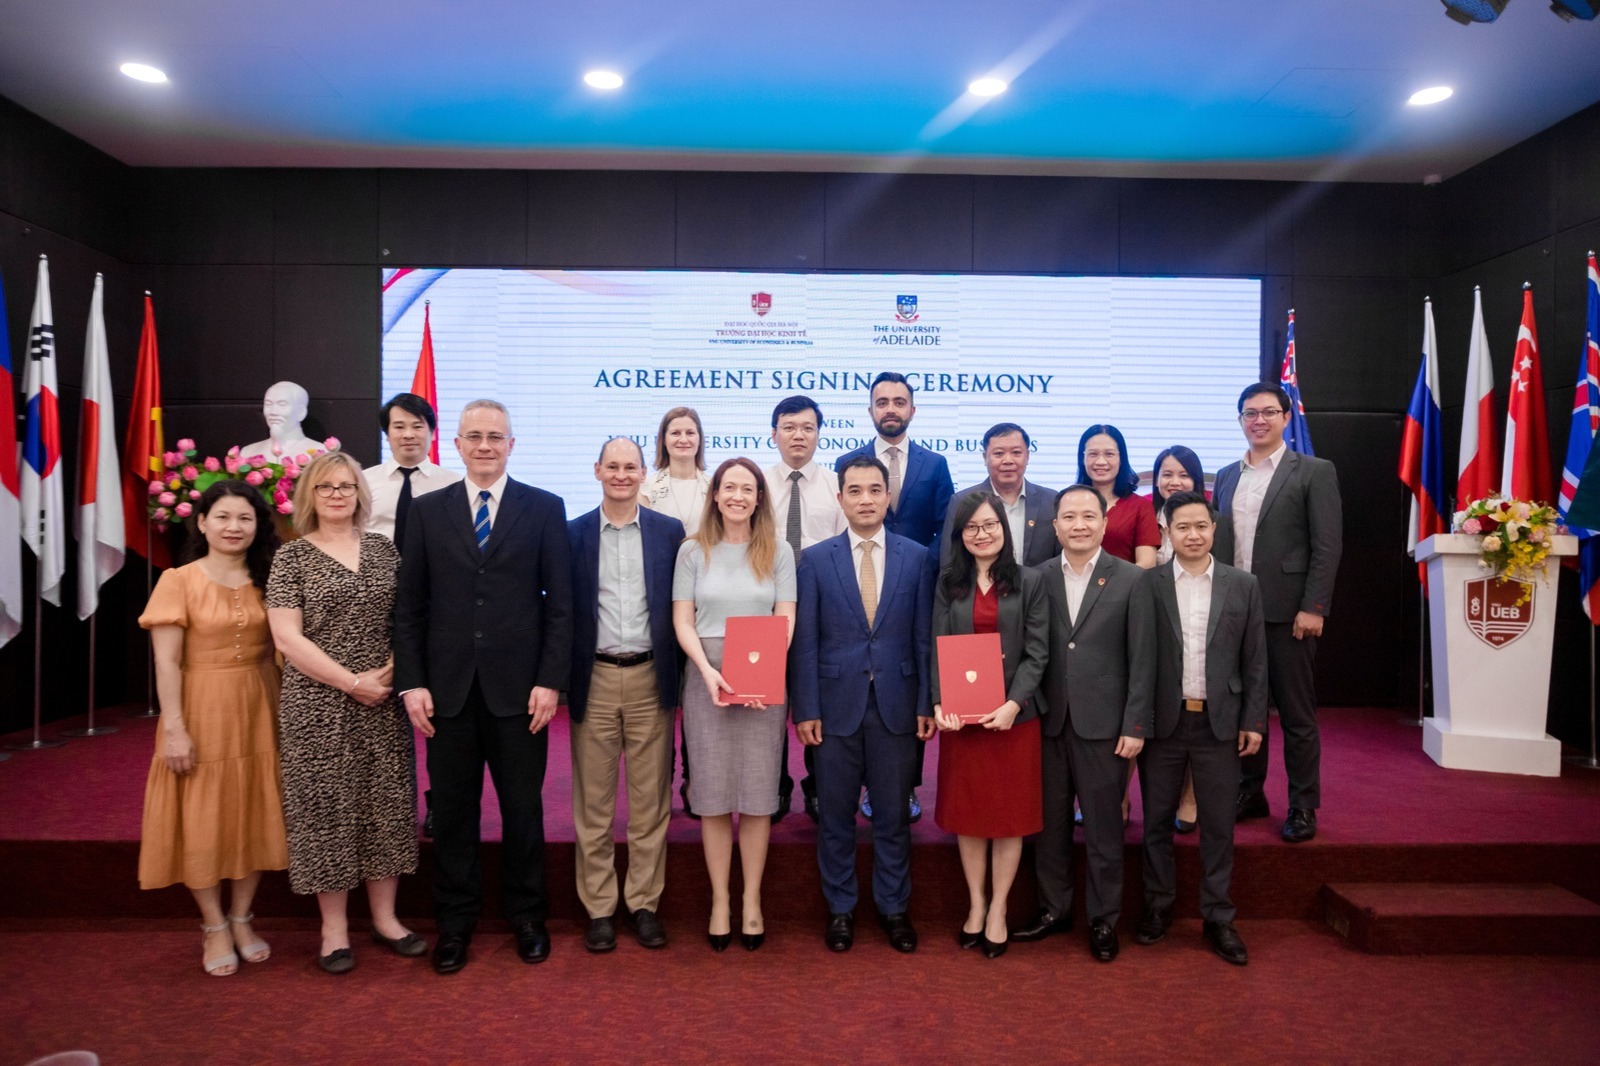 Trường Đại học Kinh tế ký kết thoả thuận hợp tác với Đại học Adelaide, Úc: Đẩy mạnh kết nối, hợp tác giáo dục và đào tạo giữa hai nước Việt Nam – Úc